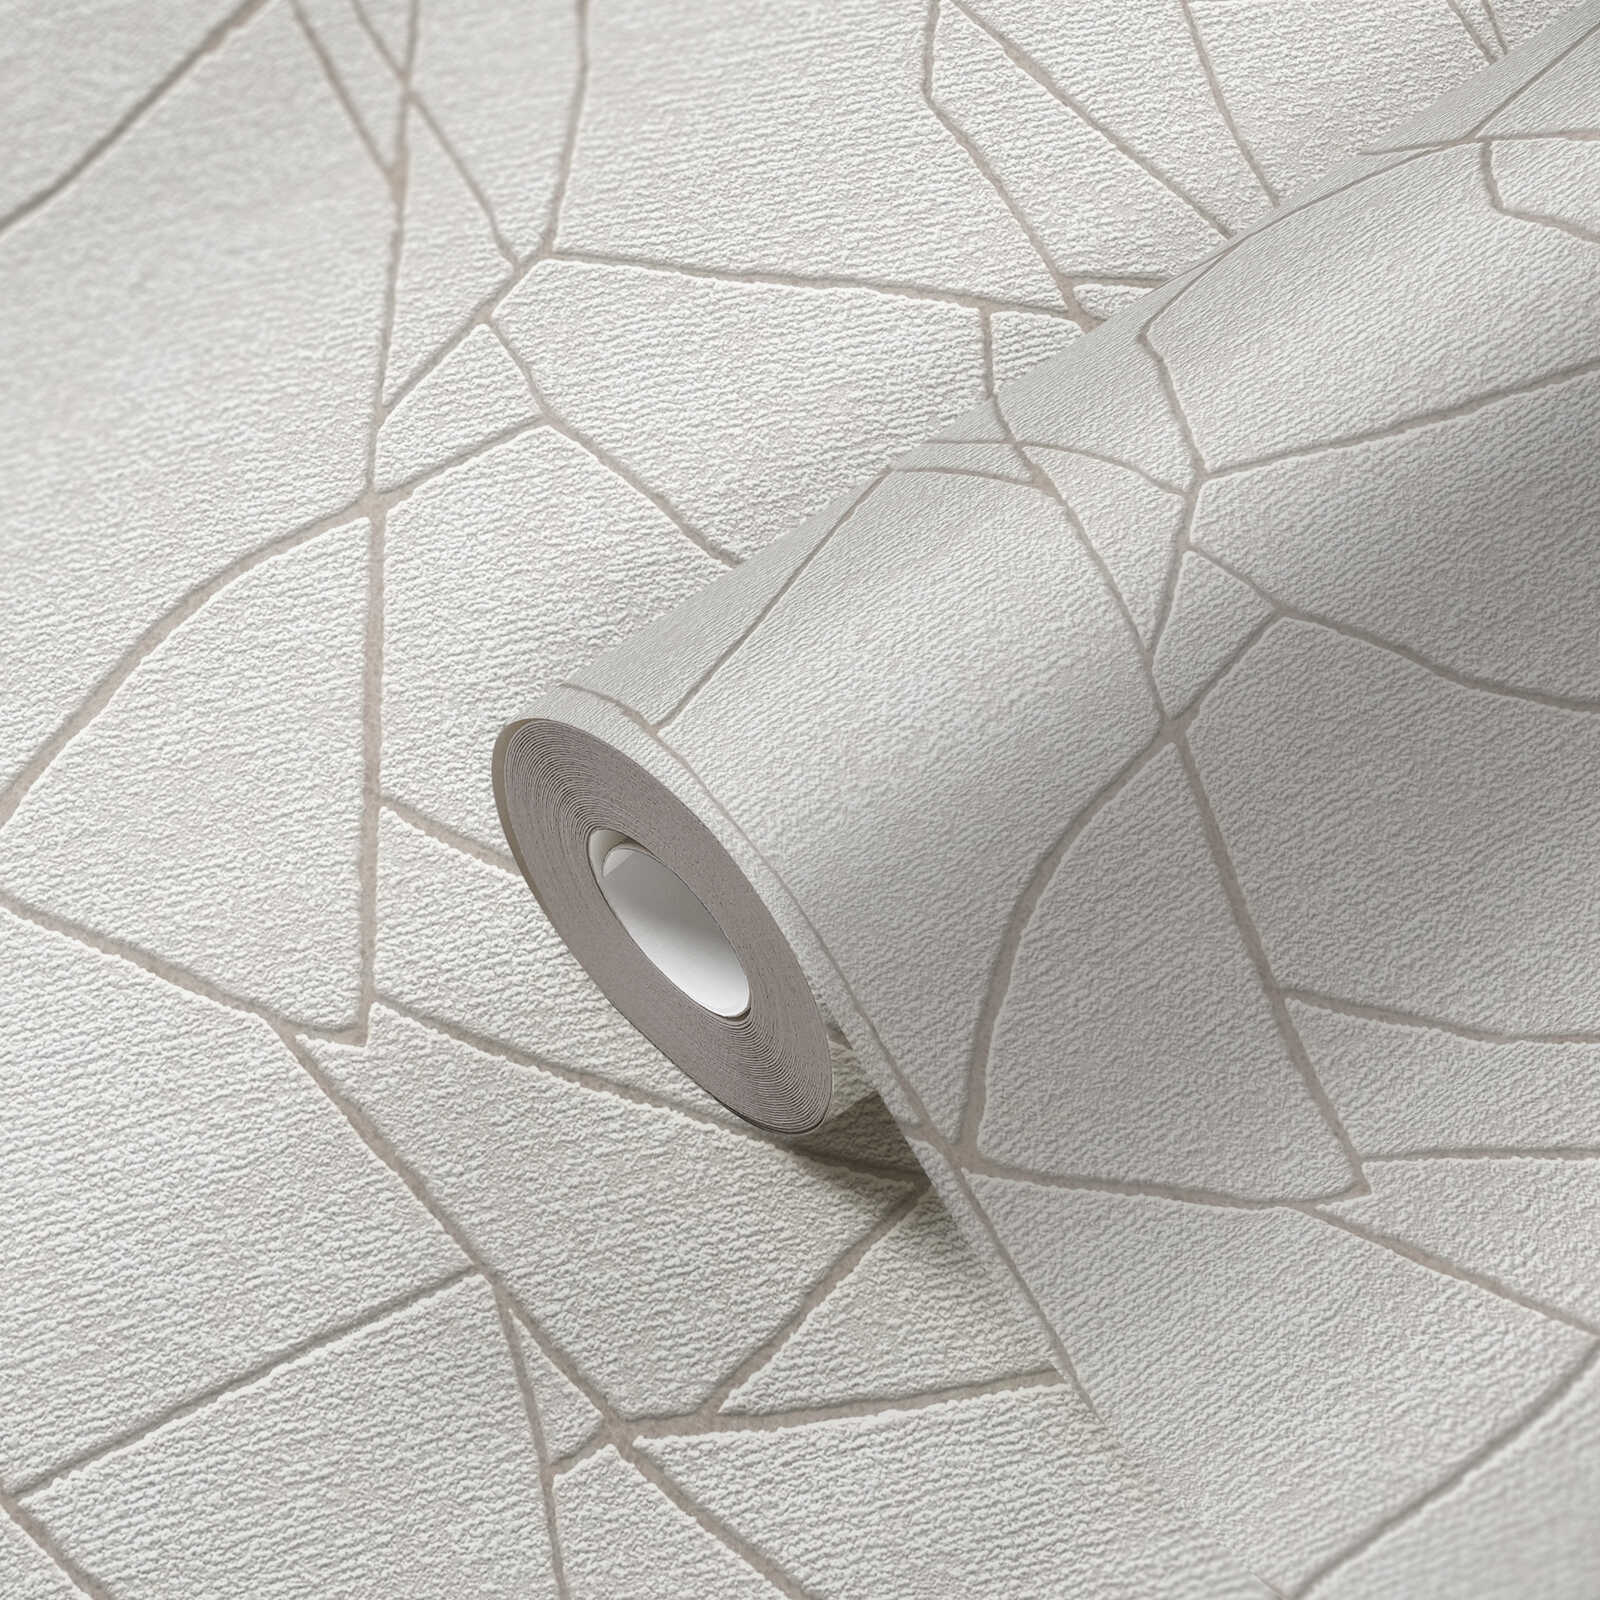             papier peint en papier intissé avec motif naturel graphique 3D - gris, blanc
        